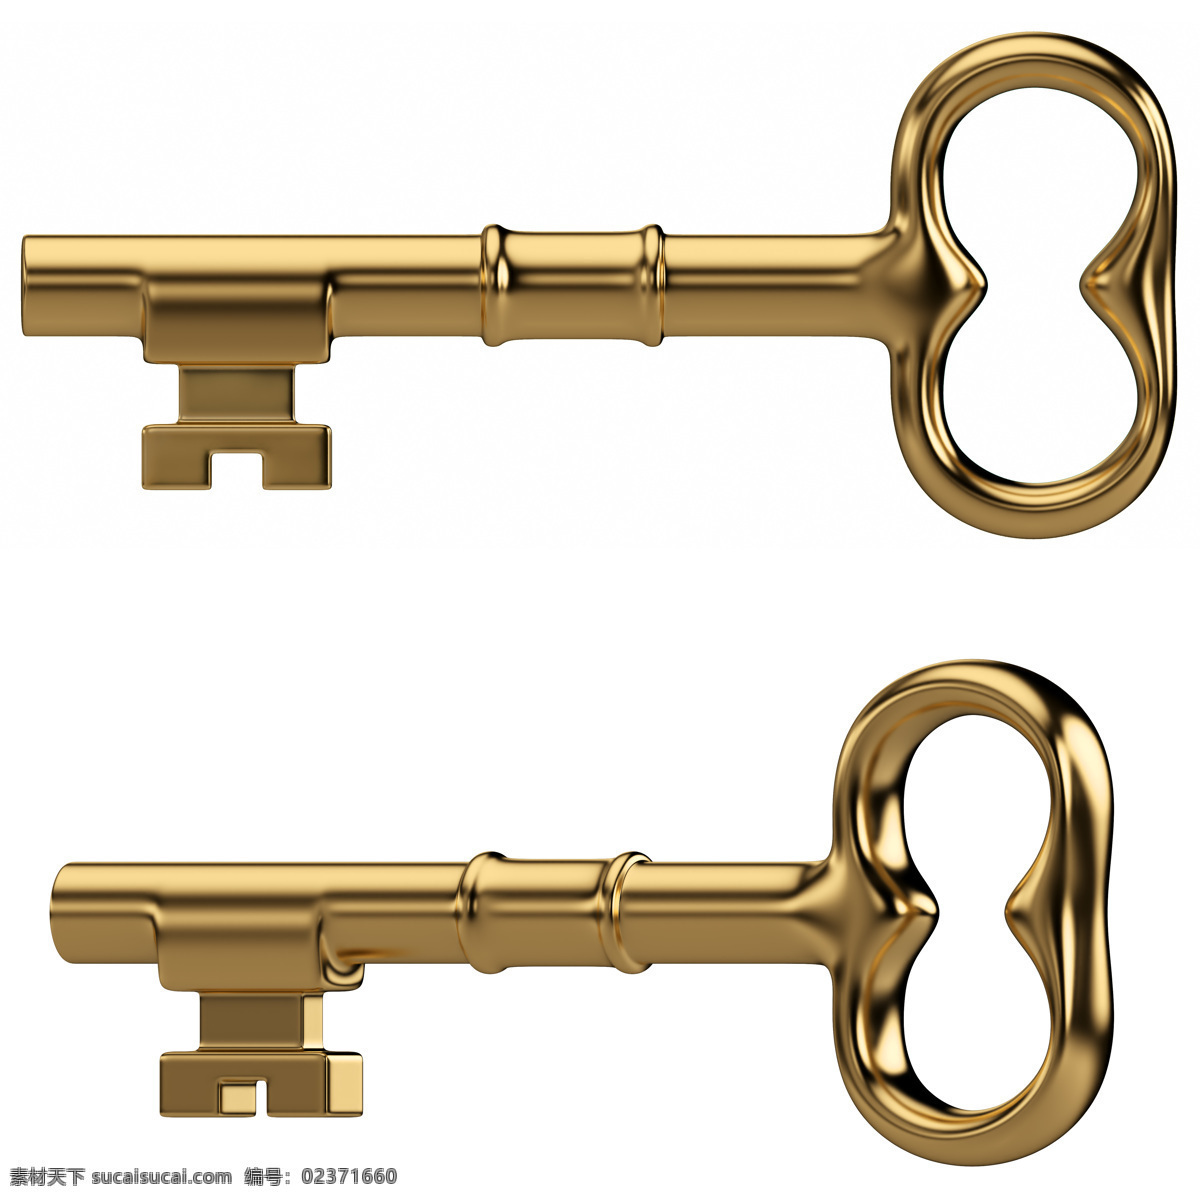 黄金钥匙 成功钥匙 金钥匙 钥匙孔 其他类别 生活百科 白色